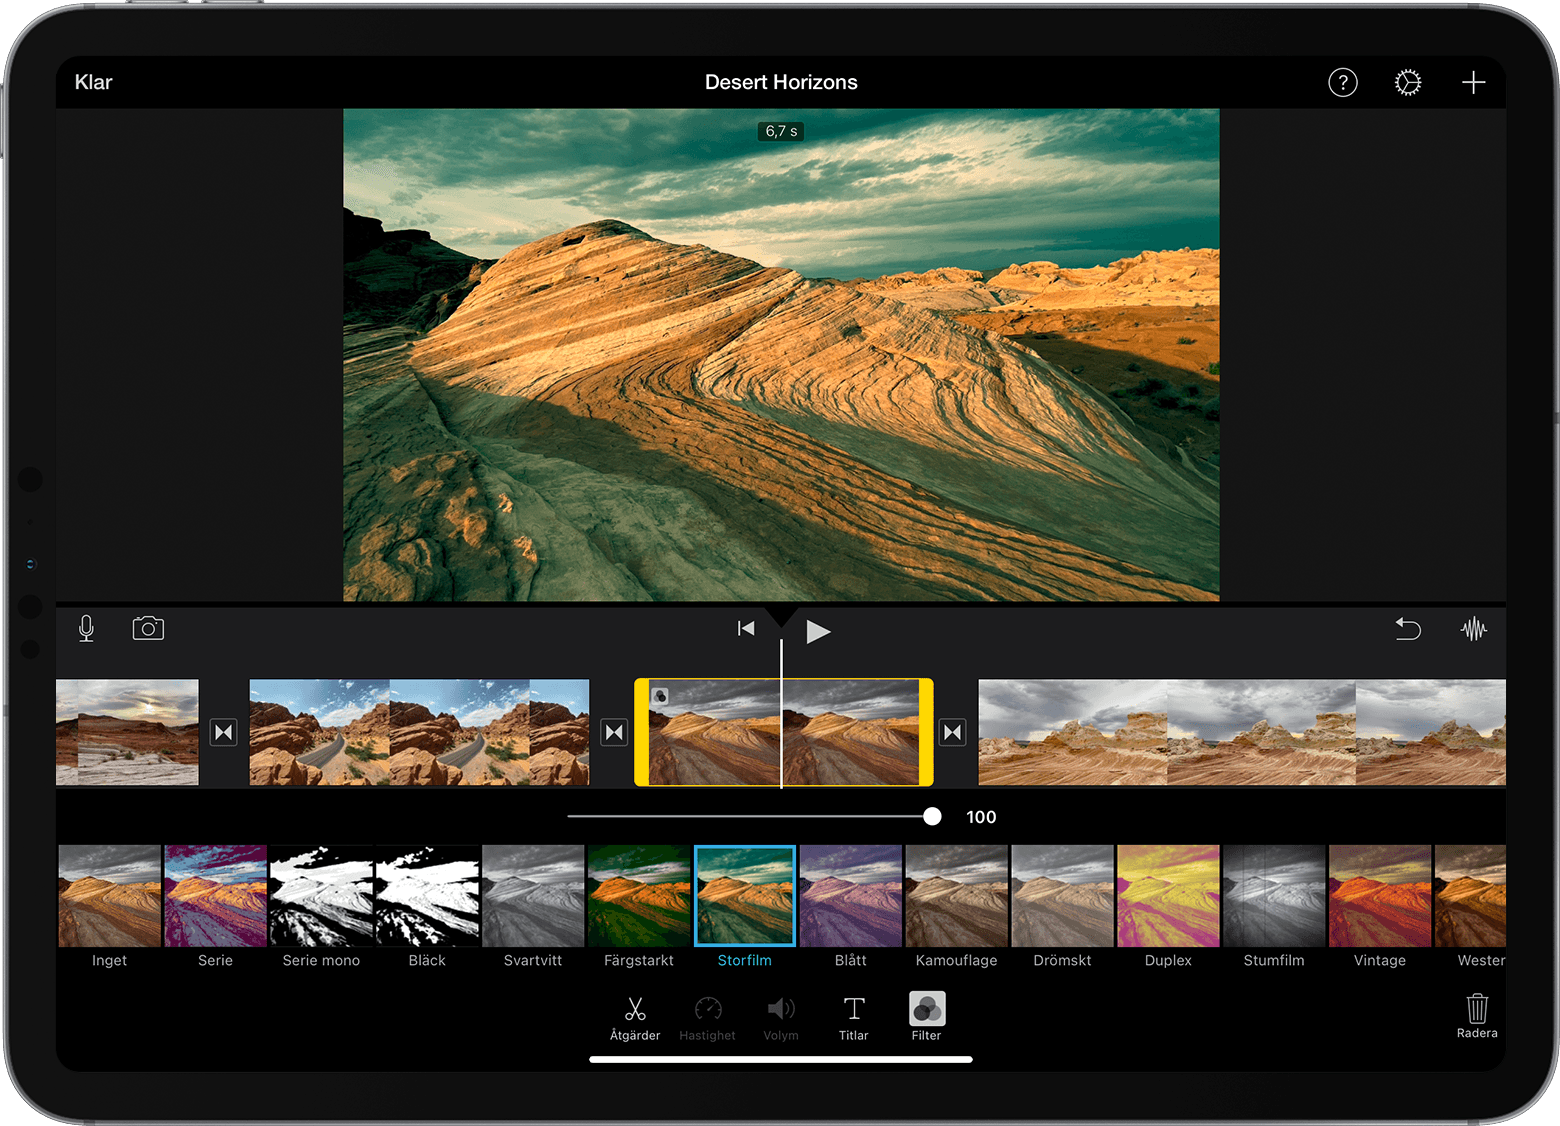 iMovie-projekt på iPad med galleriet Filter öppet